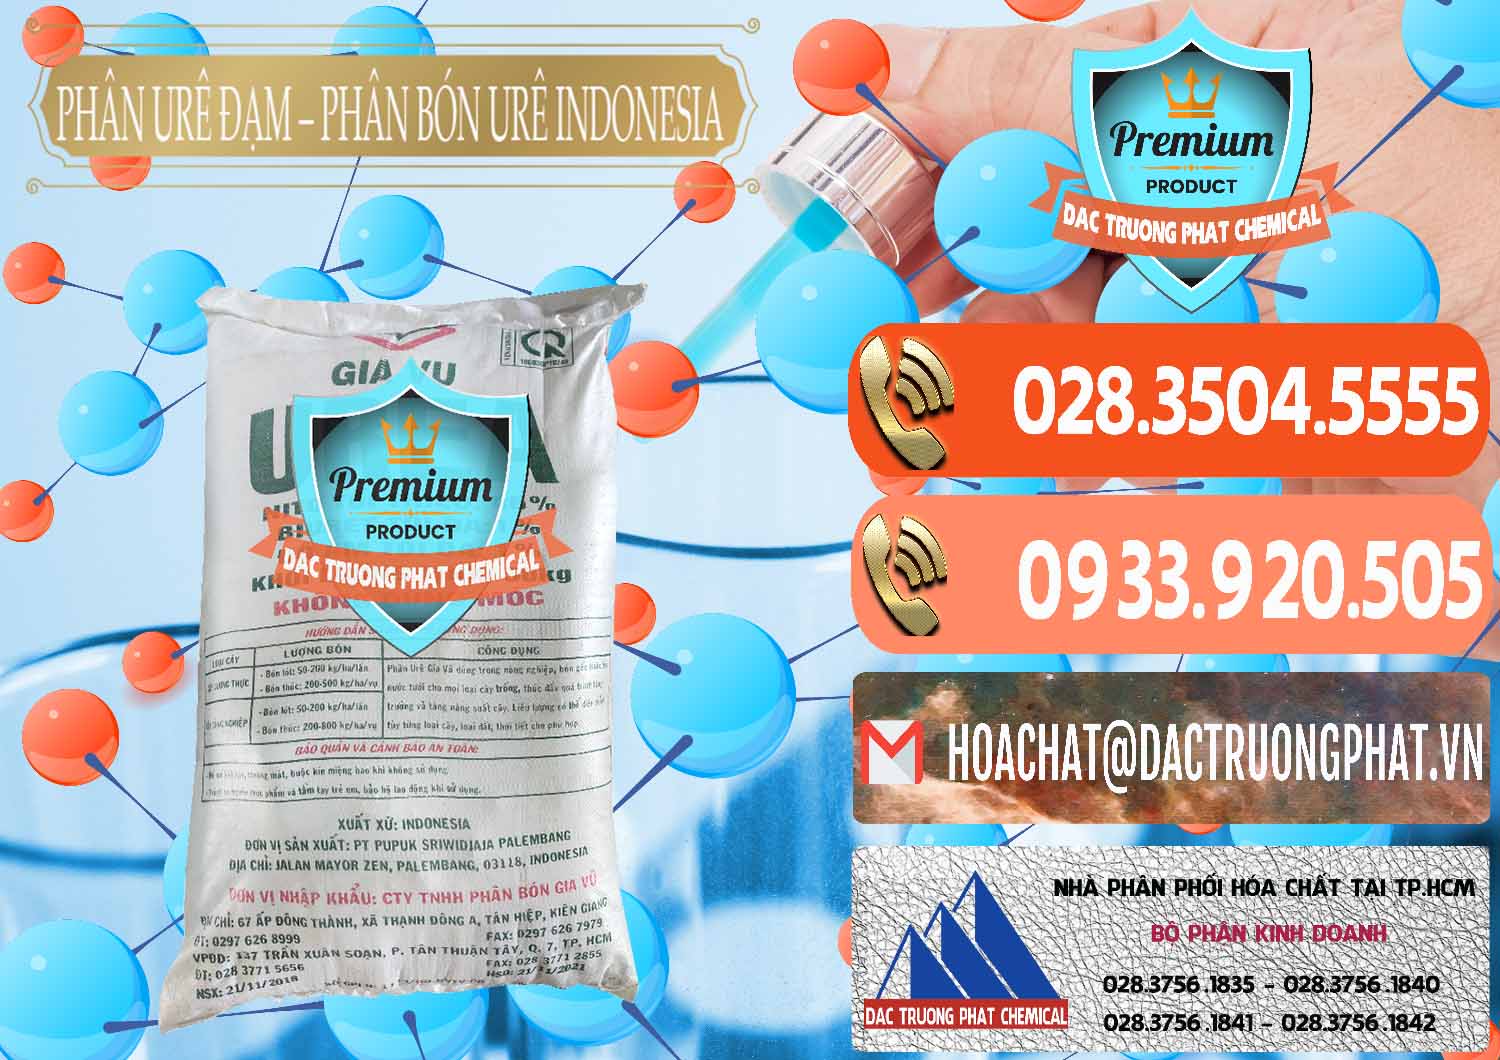 Đơn vị chuyên cung cấp - bán Phân Urê Đạm – Phân Bón Urê Indonesia - 0194 - Cty chuyên phân phối - bán hóa chất tại TP.HCM - hoachatmientay.com